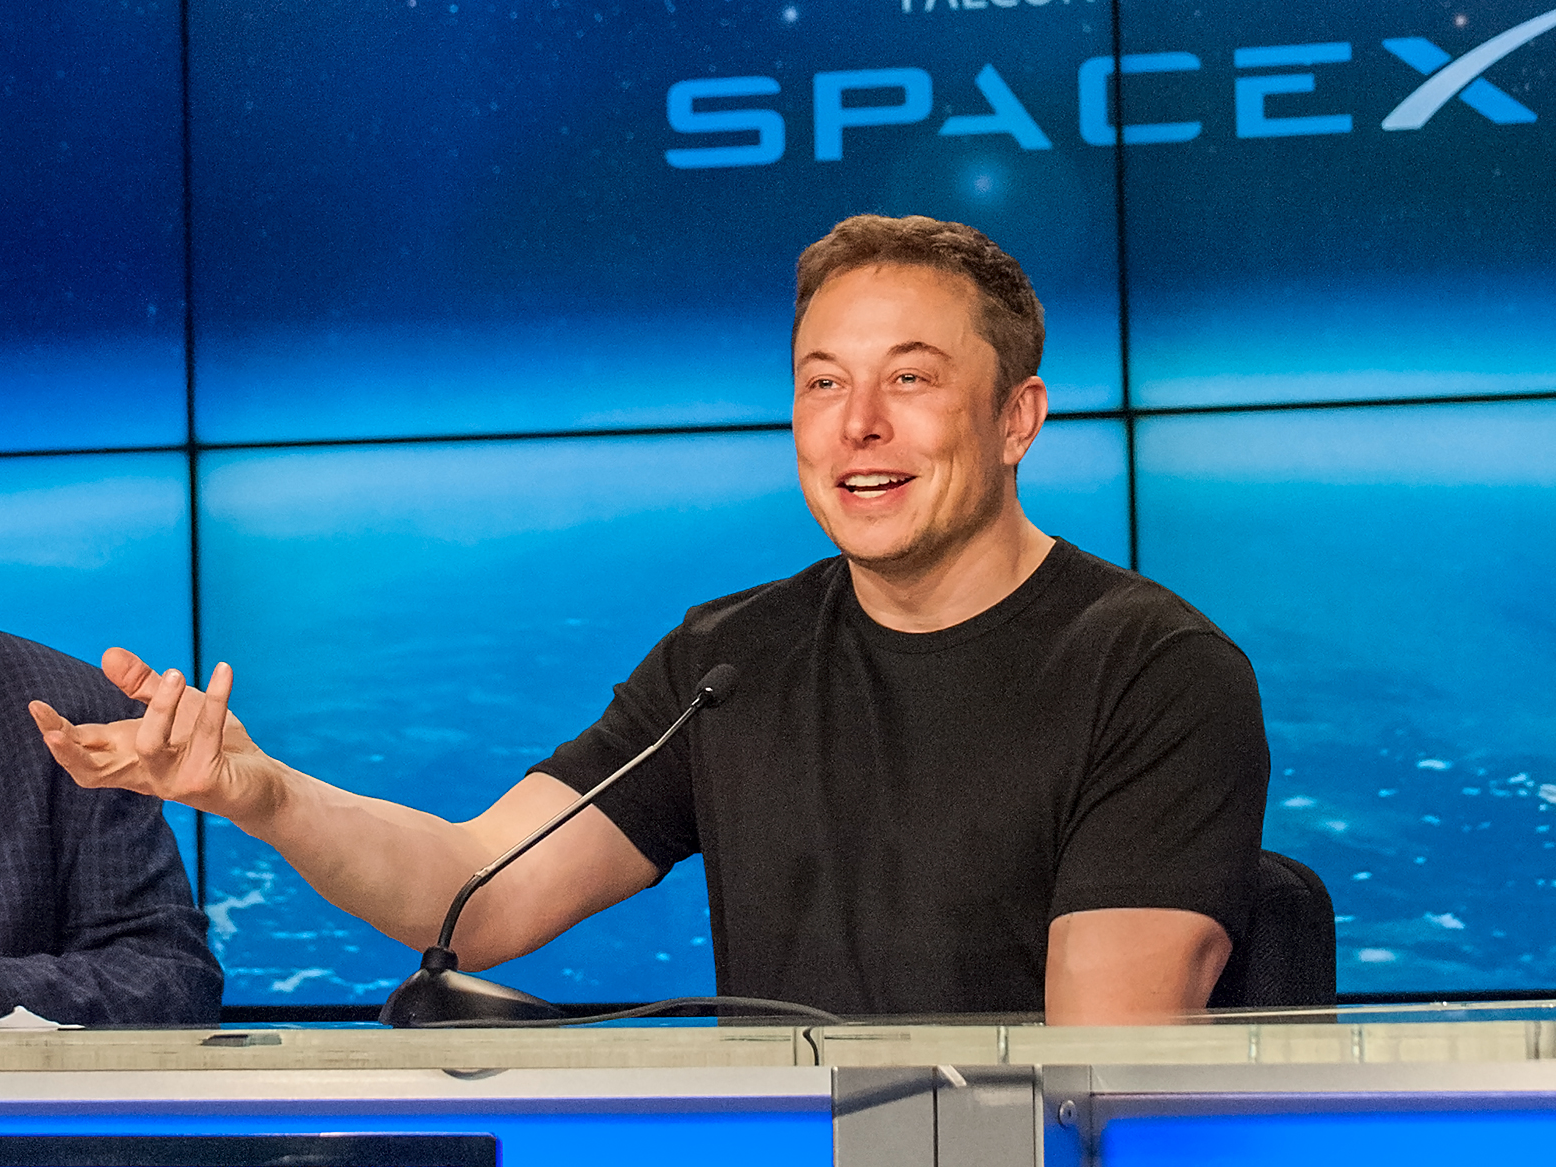 Илон Маск. Илон Маск Tesla, SPACEX. Илон Маск (Elon Musk). Elon Musk Space x.